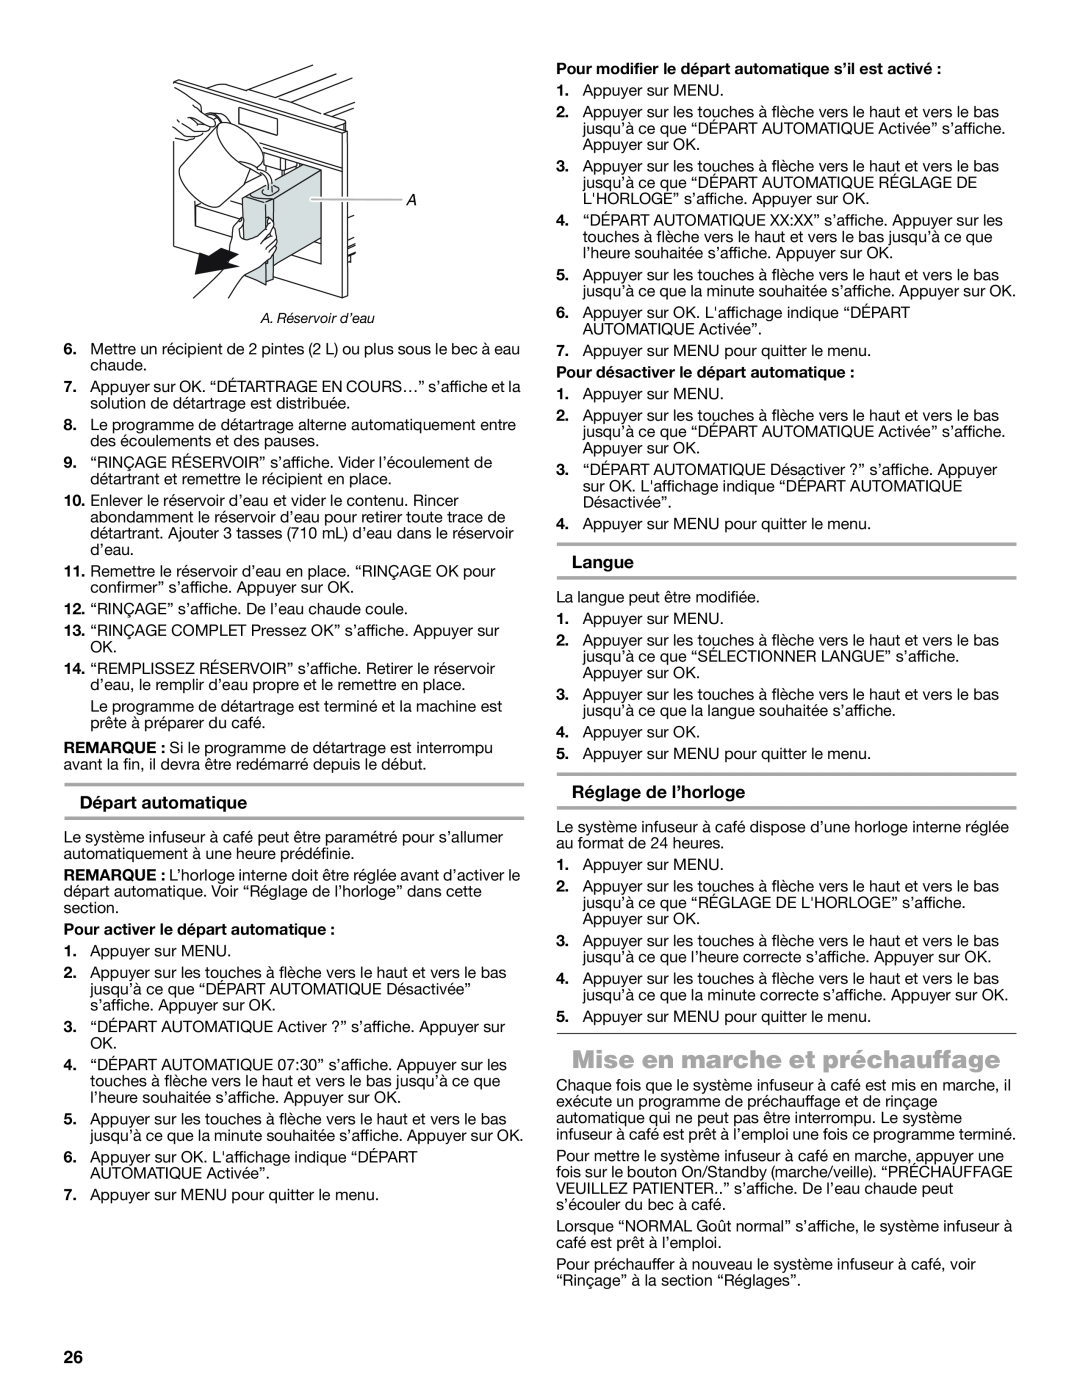 Jenn-Air JBC7624BS manual Mise en marche et préchauffage, Départ automatique, Langue, Réglage de l’horloge 